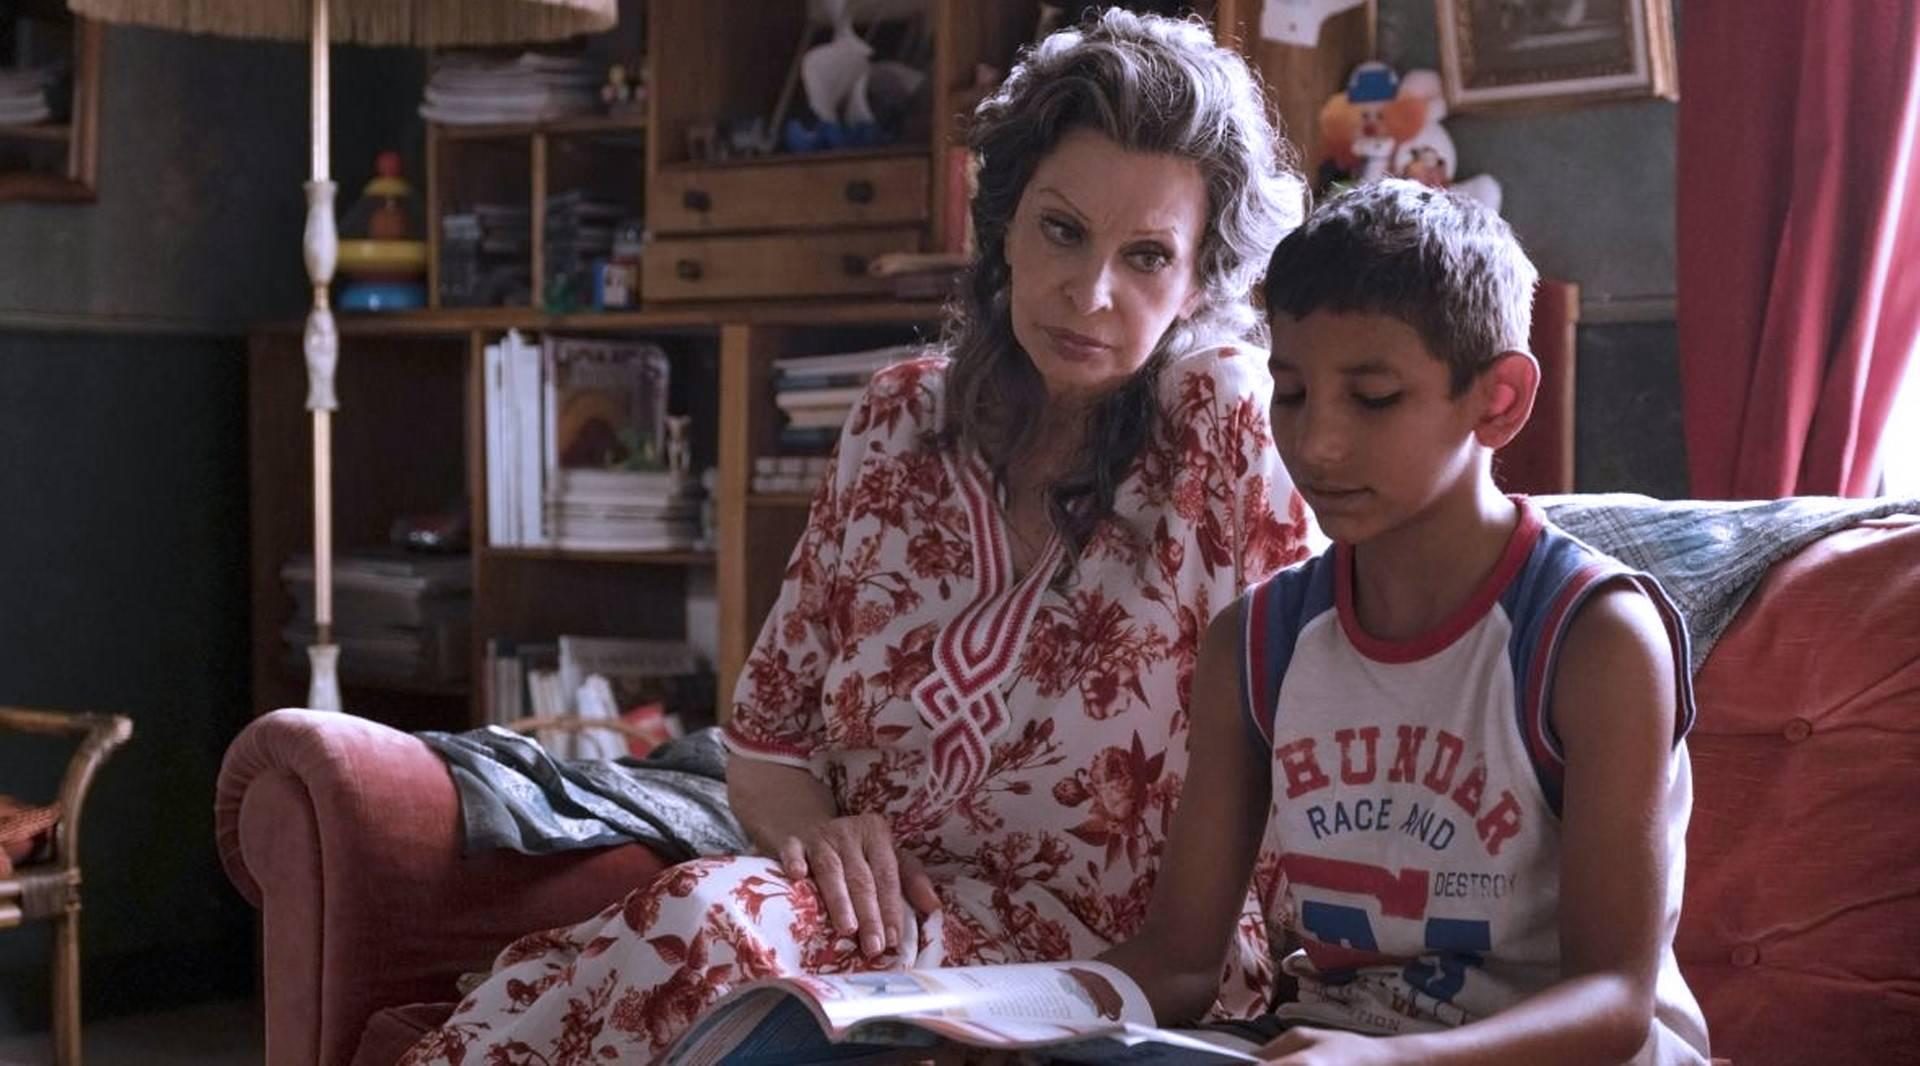 سوفیا لورن (مادام رزا) و یوسف دیگو پیرو (یوسف) در کنار هم در نمایی از فیلم زندگی در پیش رو